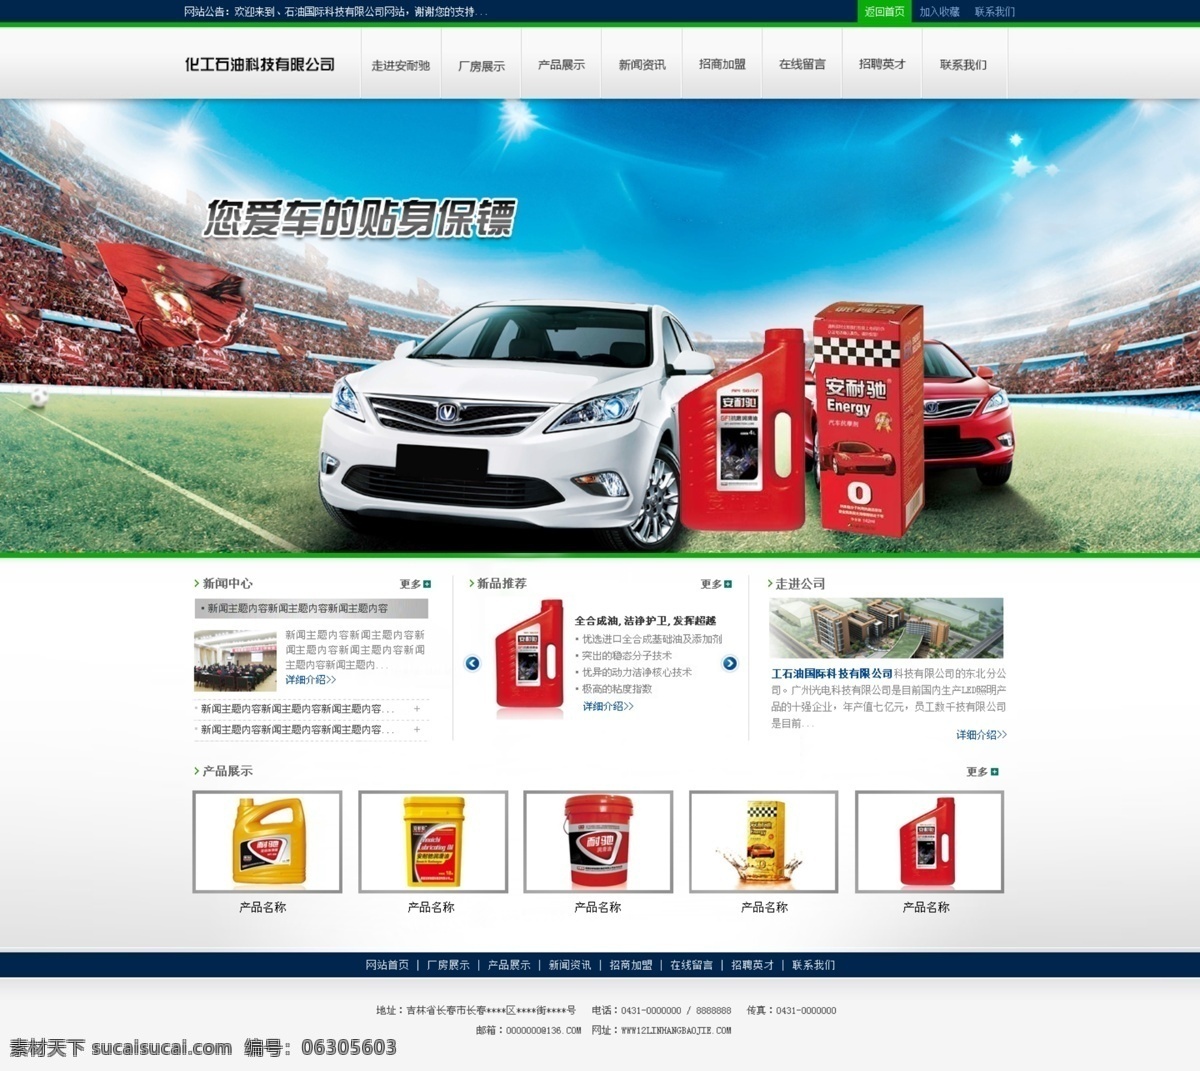 润滑油 网页设计 简约 汽车 网页 蓝绿搭配 原创设计 原创网页设计